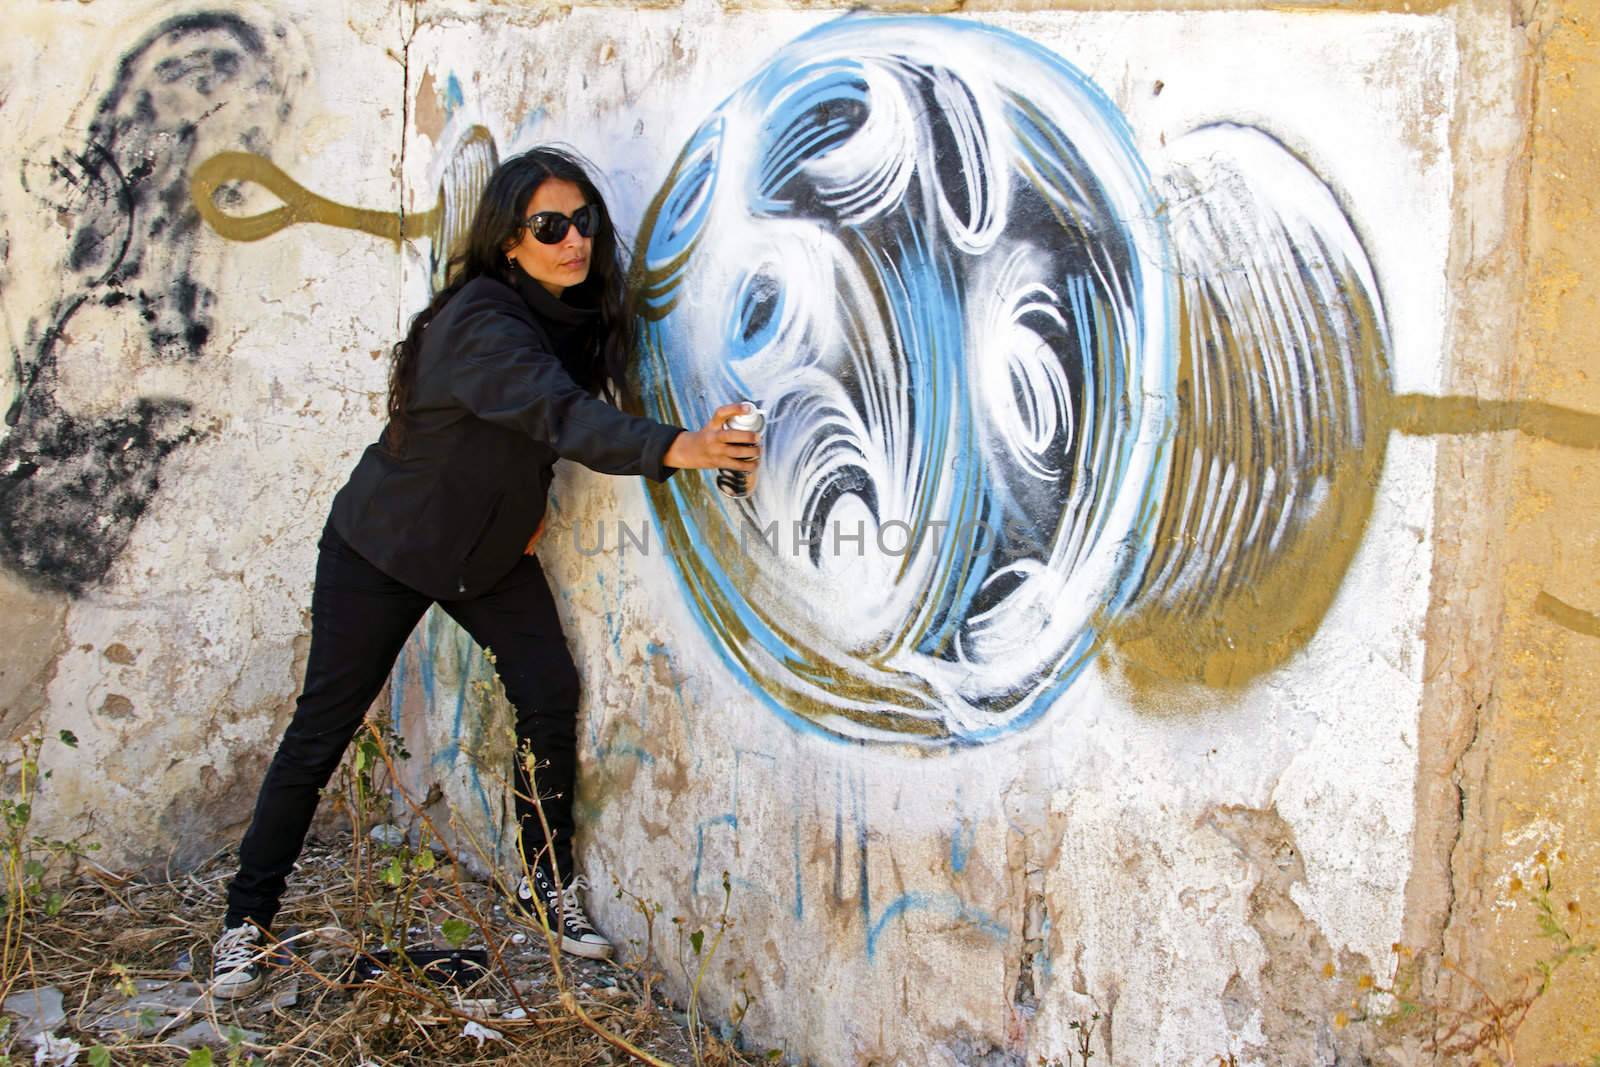 Woman in black spraying at a graffiti brick wall